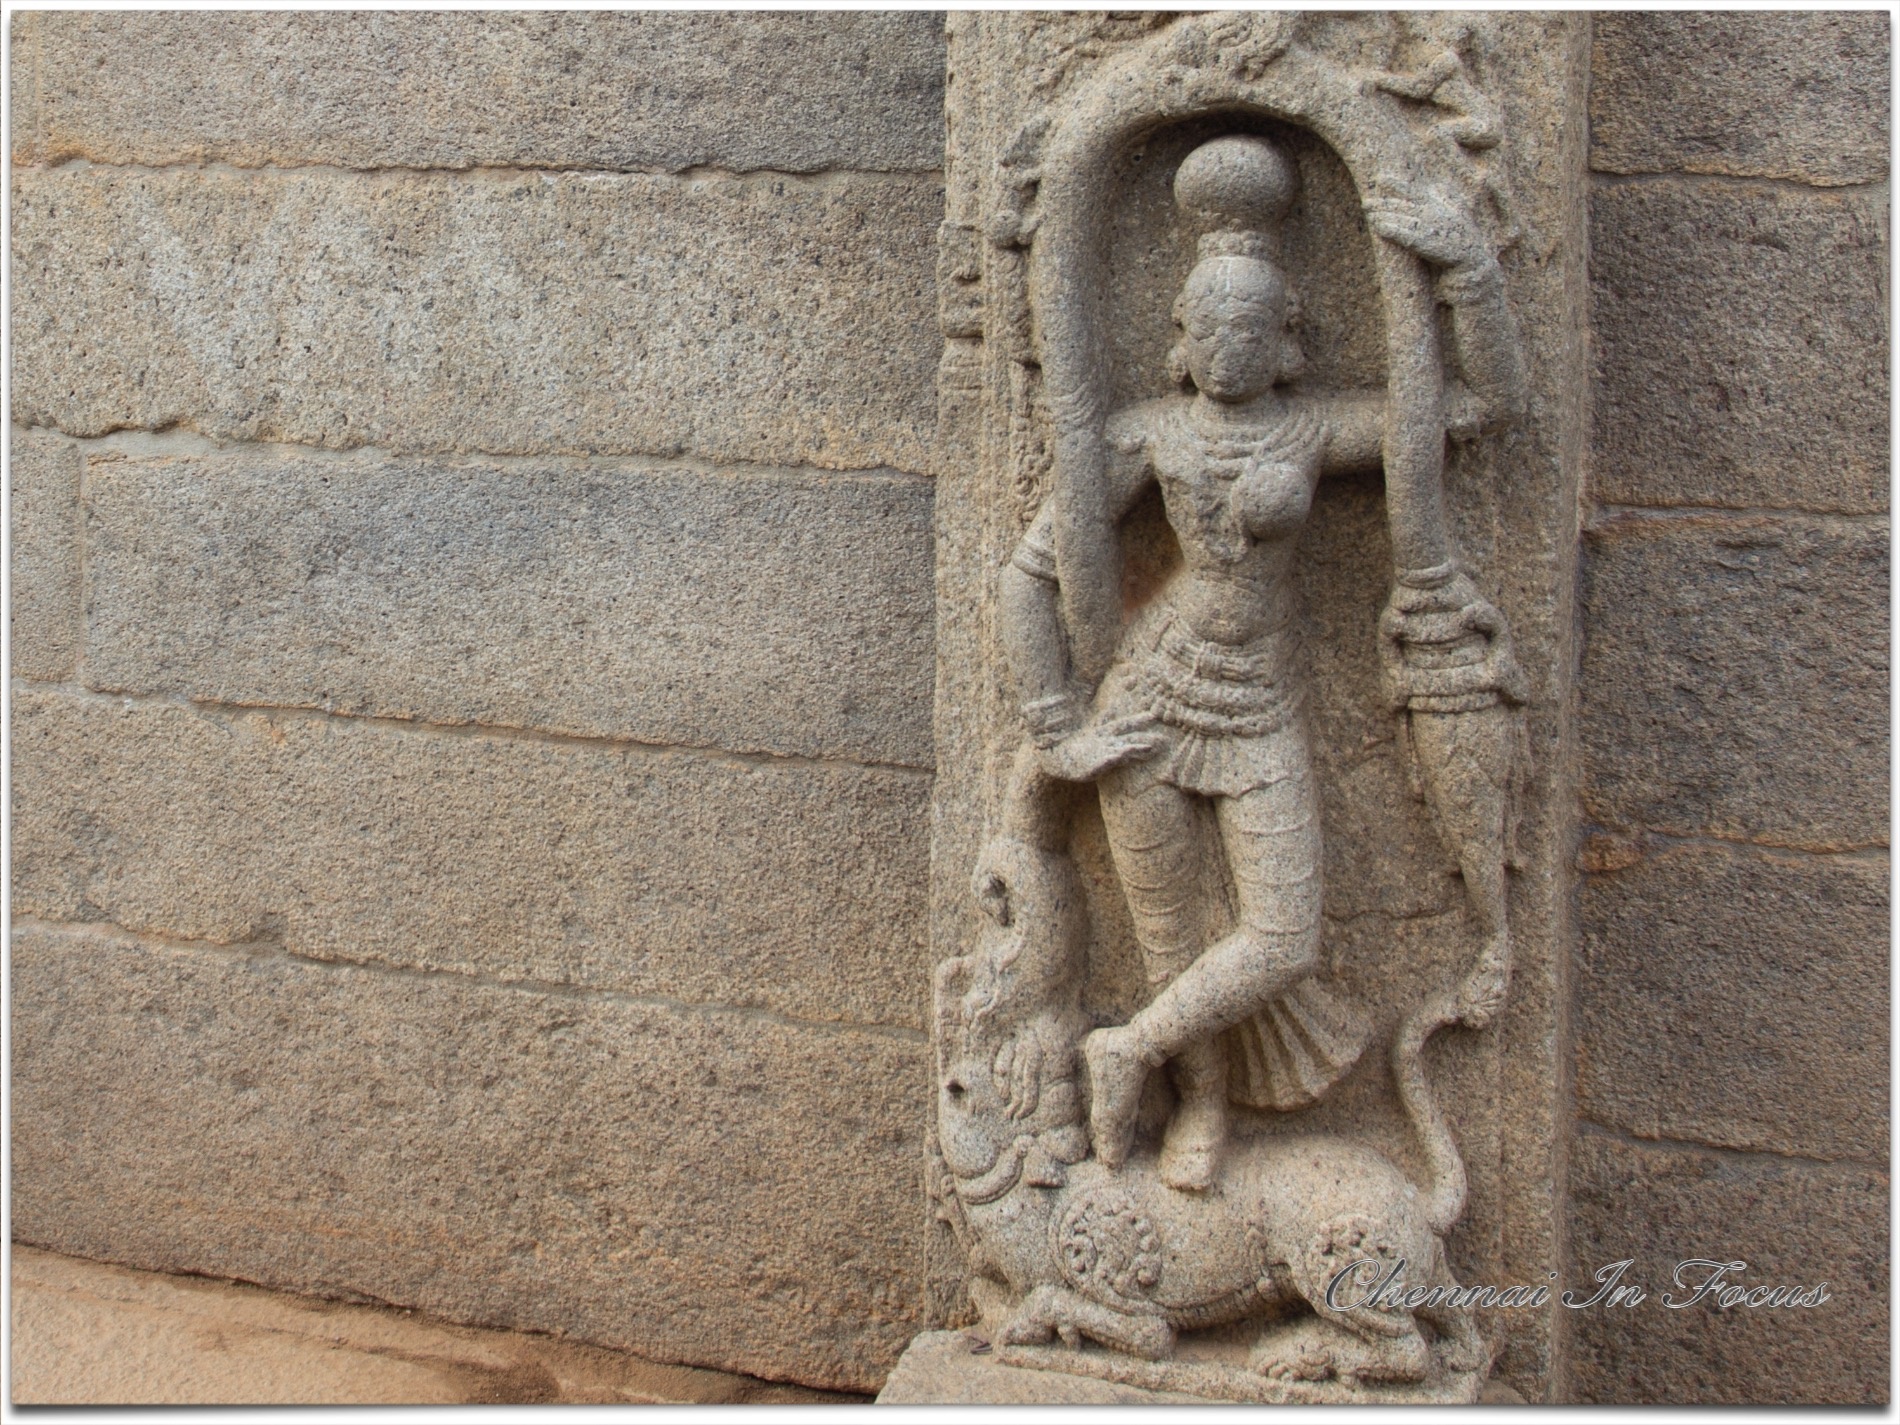 A gateway door in Mamallapuram, mahabalipuram